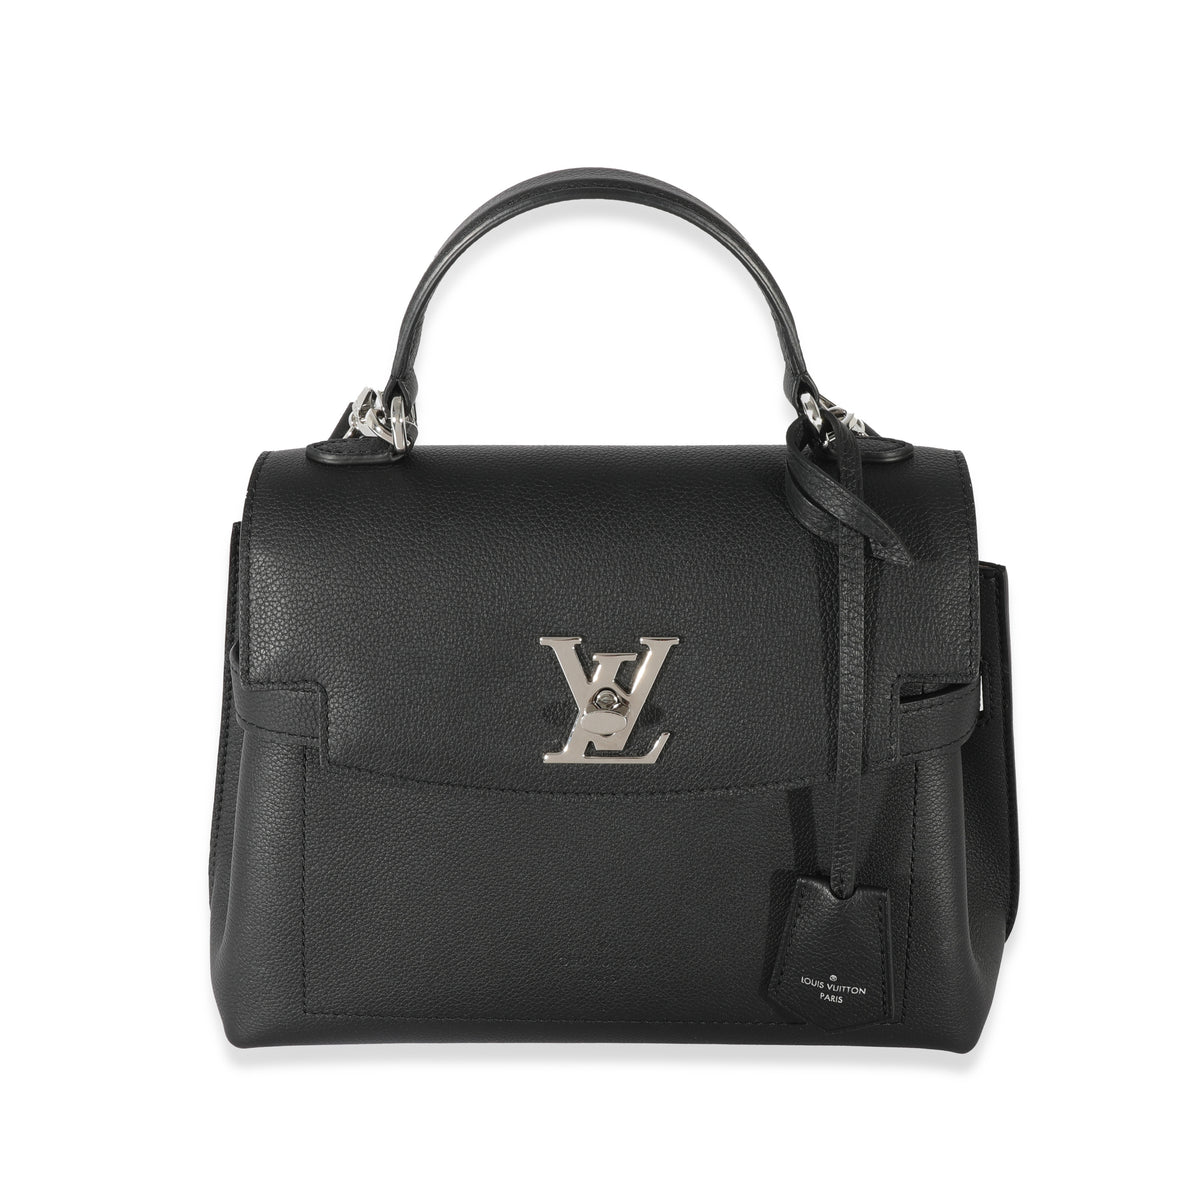 Louis Vuitton - Lockme Ever Mini Bag - Black - Leather - Women - Luxury